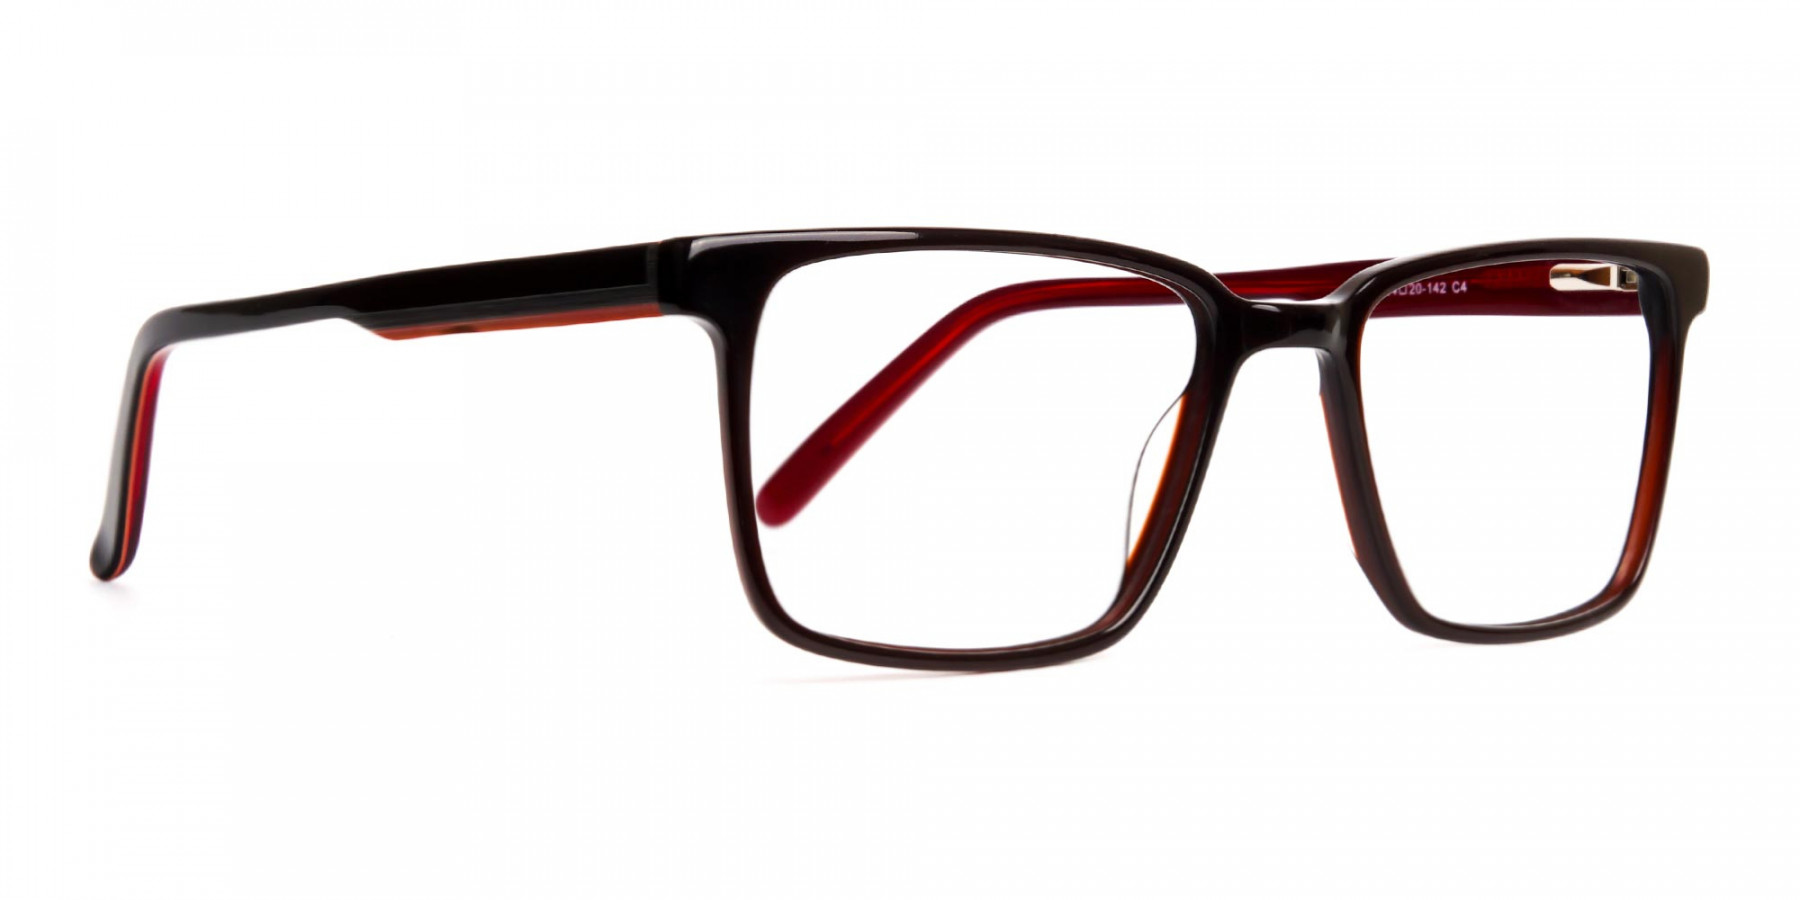 dark-brown-Rectangular-full-rim-Glasses-frames-1